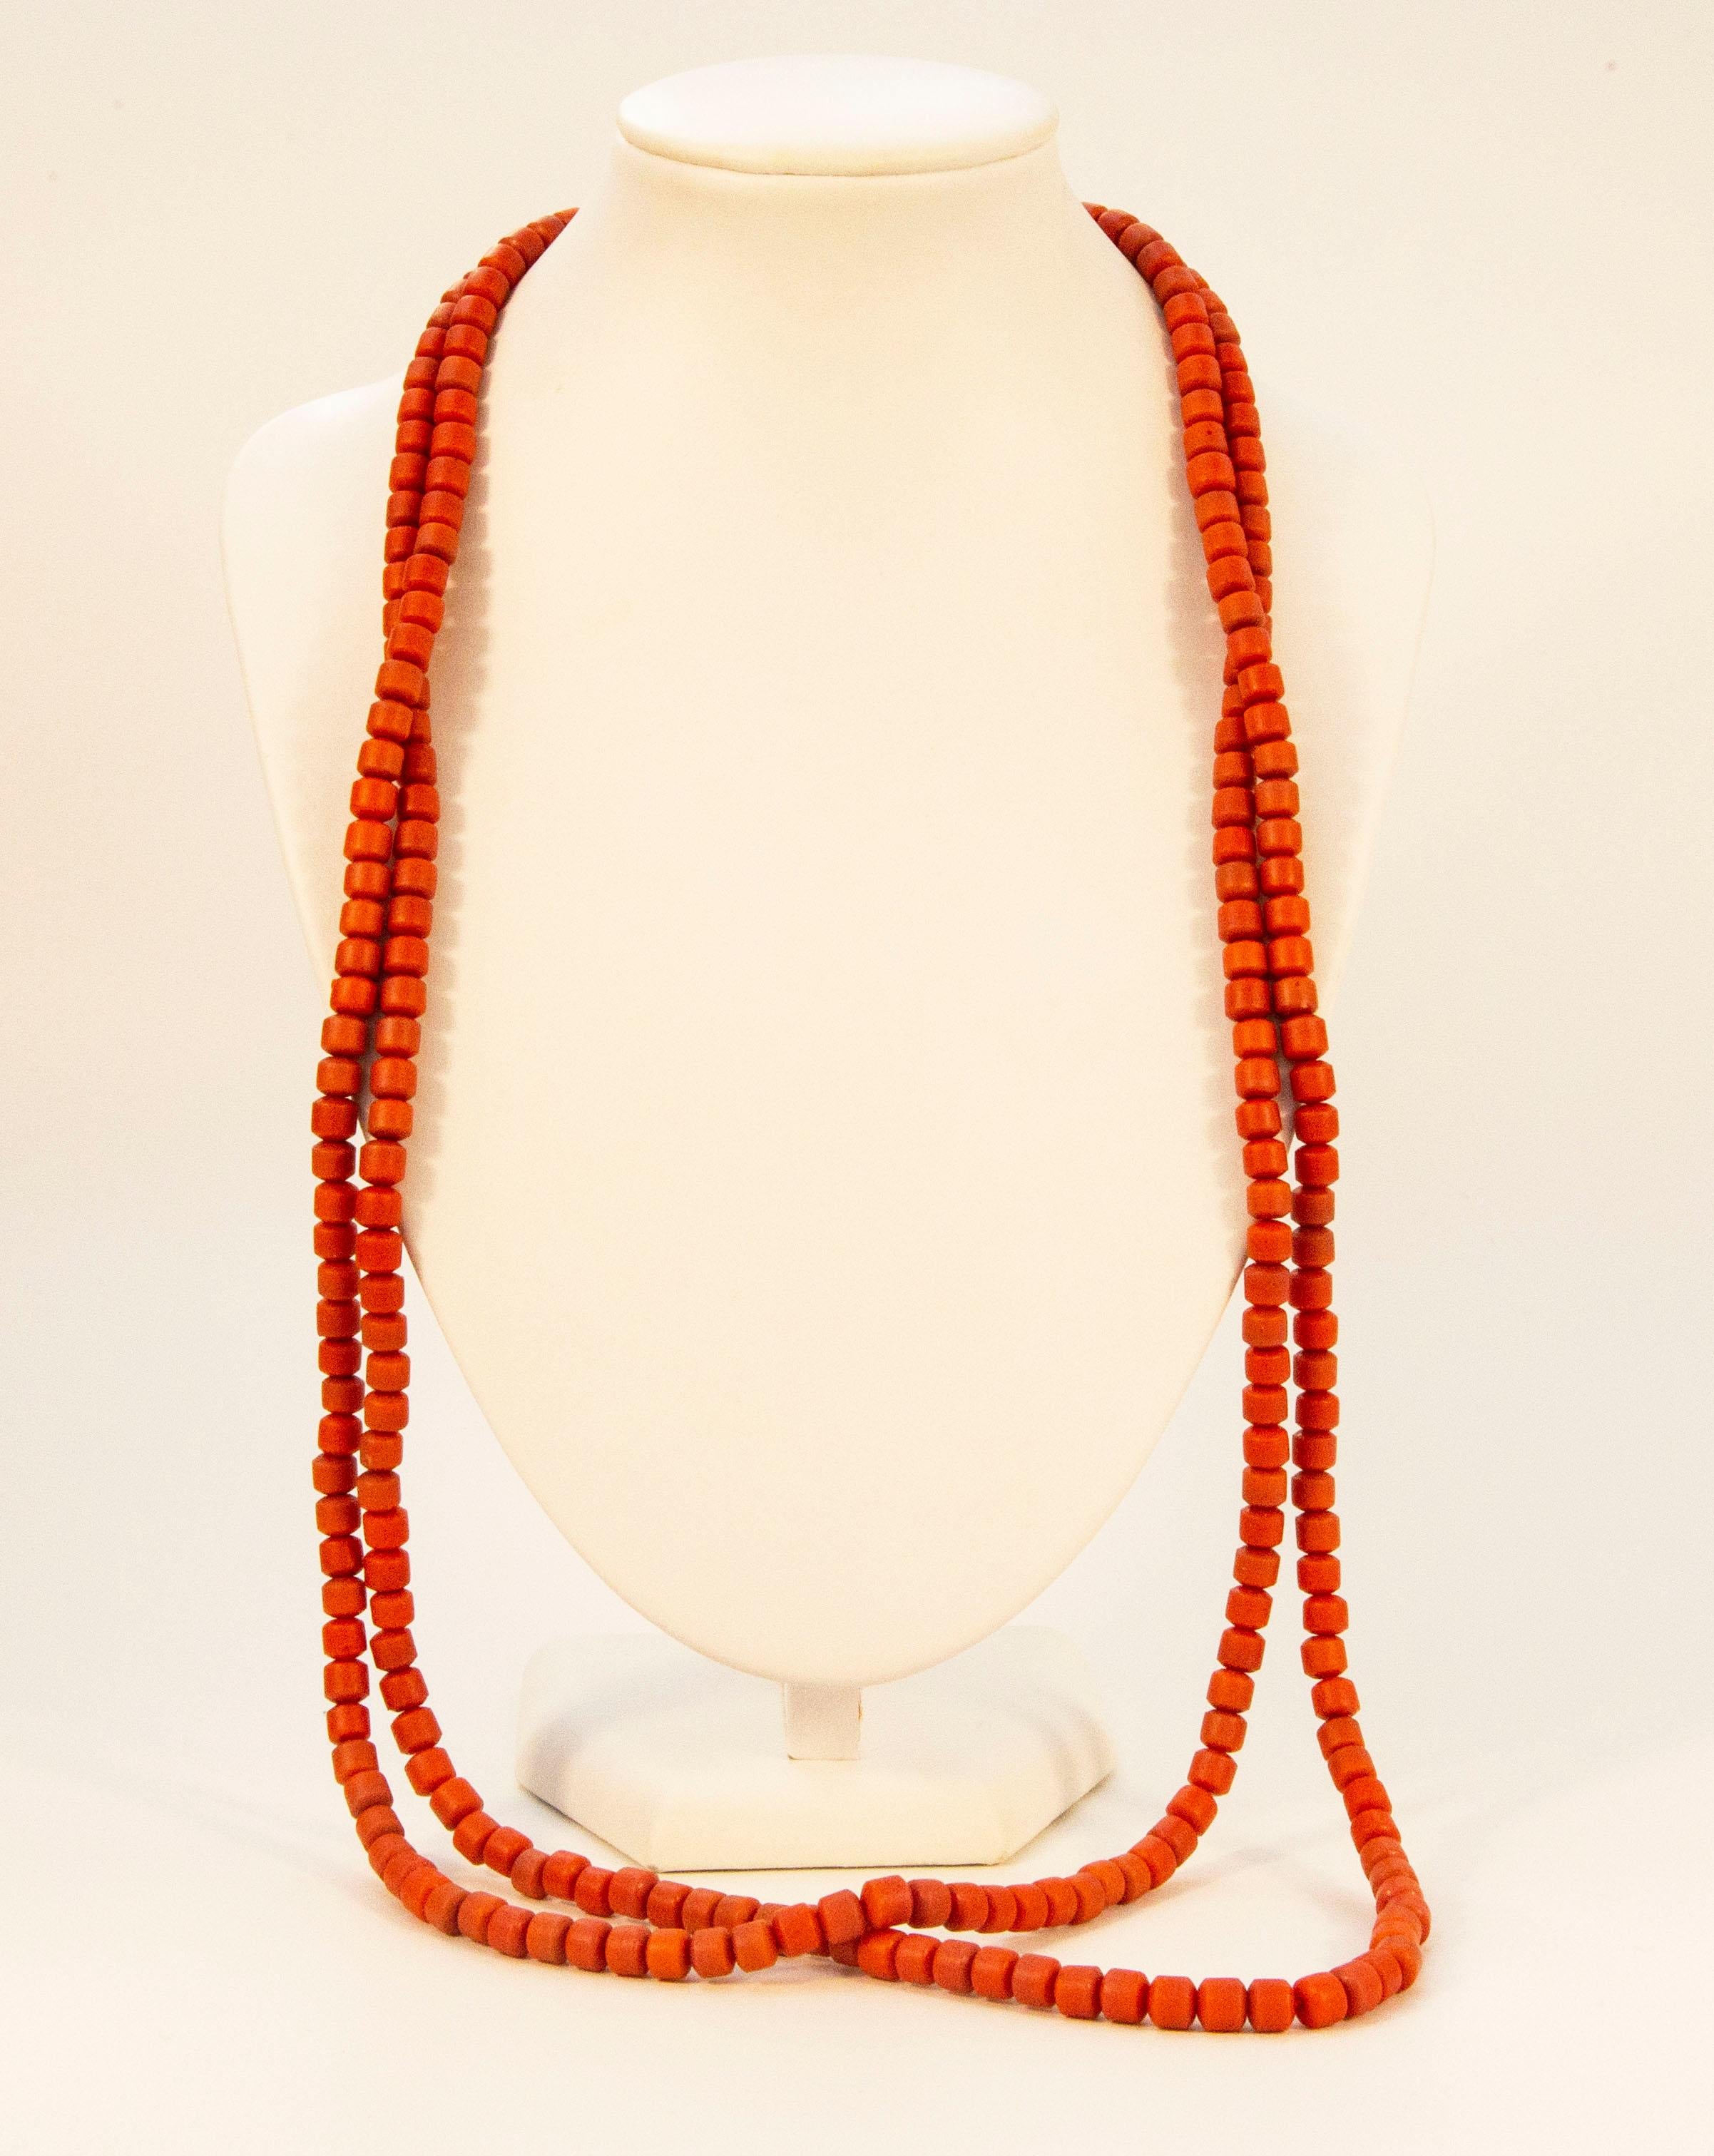 Eine antike einsträngige, sehr lange, echte rote Korallen (Corallium Rubrum*) Perlenkette mit einem Messingverschluss. Die Halskette wurde zu Beginn des 20. Jahrhunderts in den Niederlanden hergestellt. Die Korallenperlen sind nicht gefärbt und die